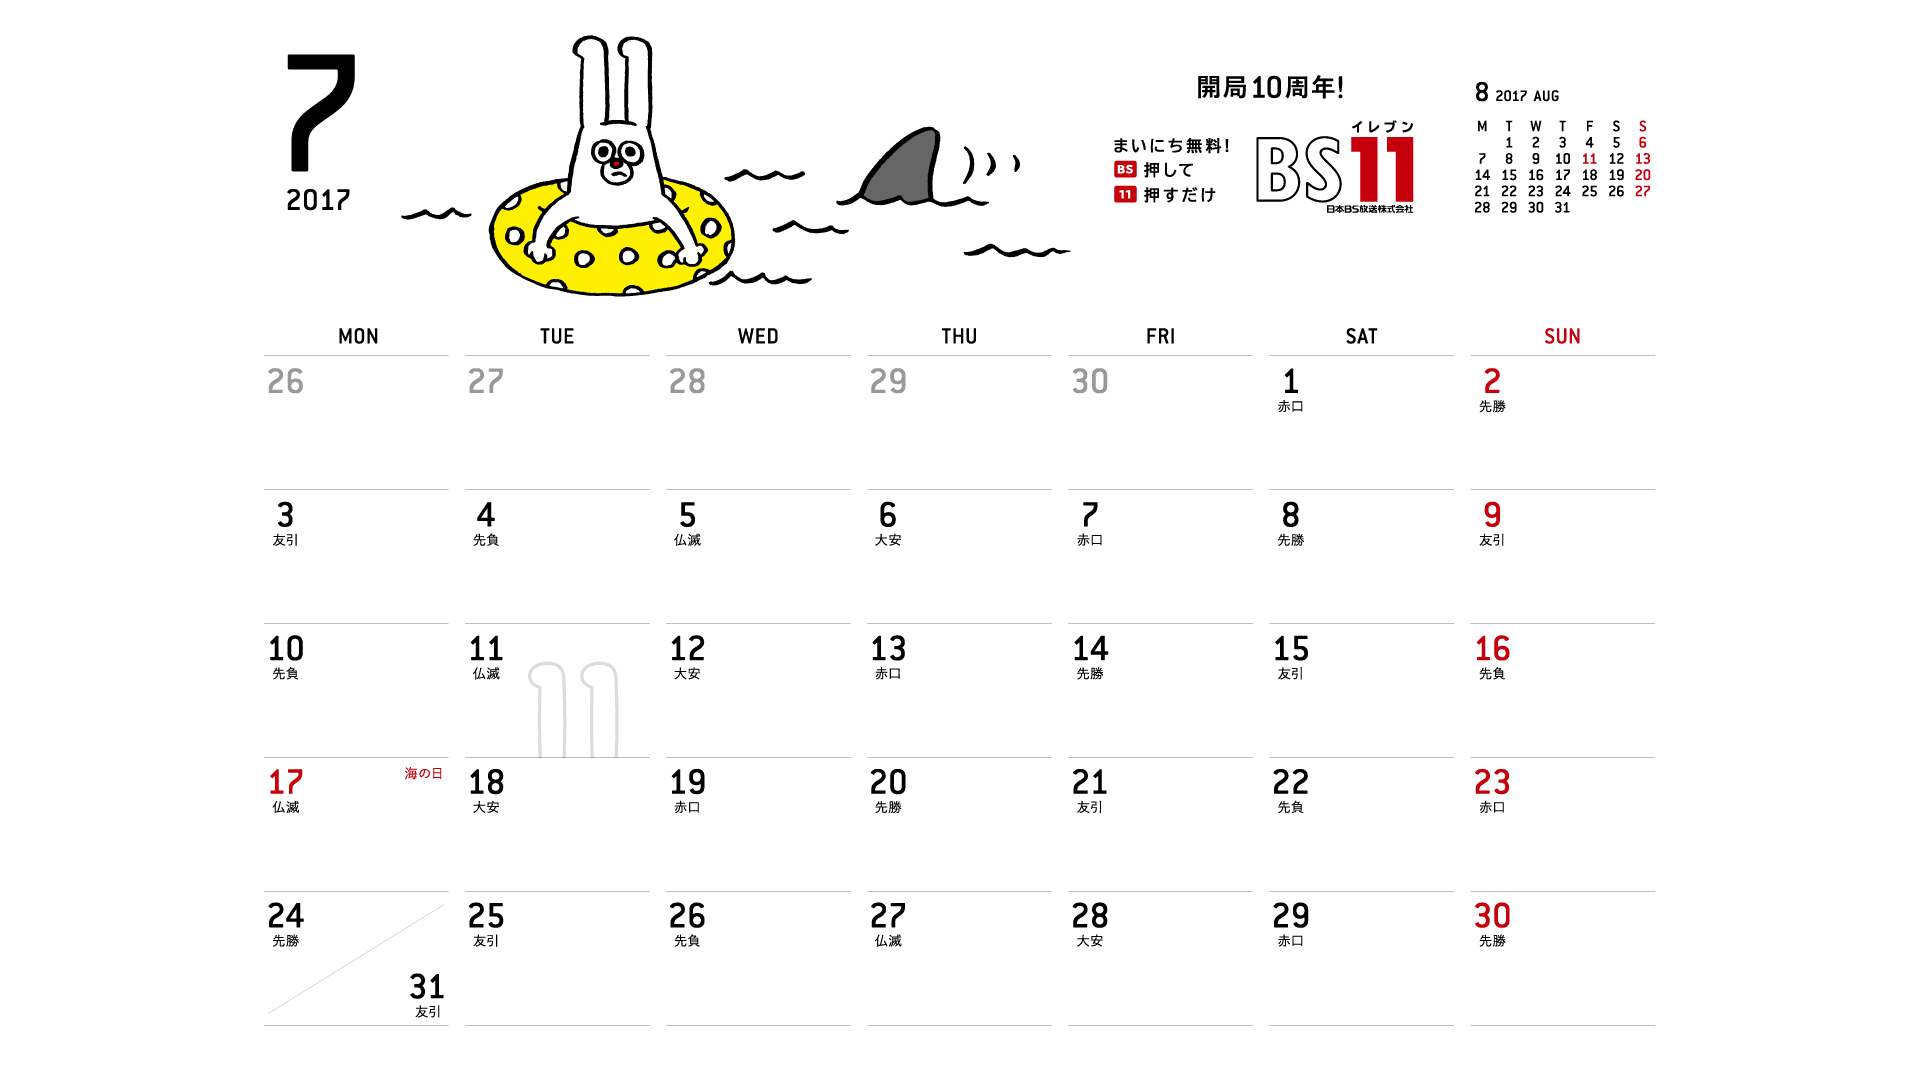 じゅういっちゃんのデジタルカレンダー17年07月 Bs11 イレブン いつでも無料放送